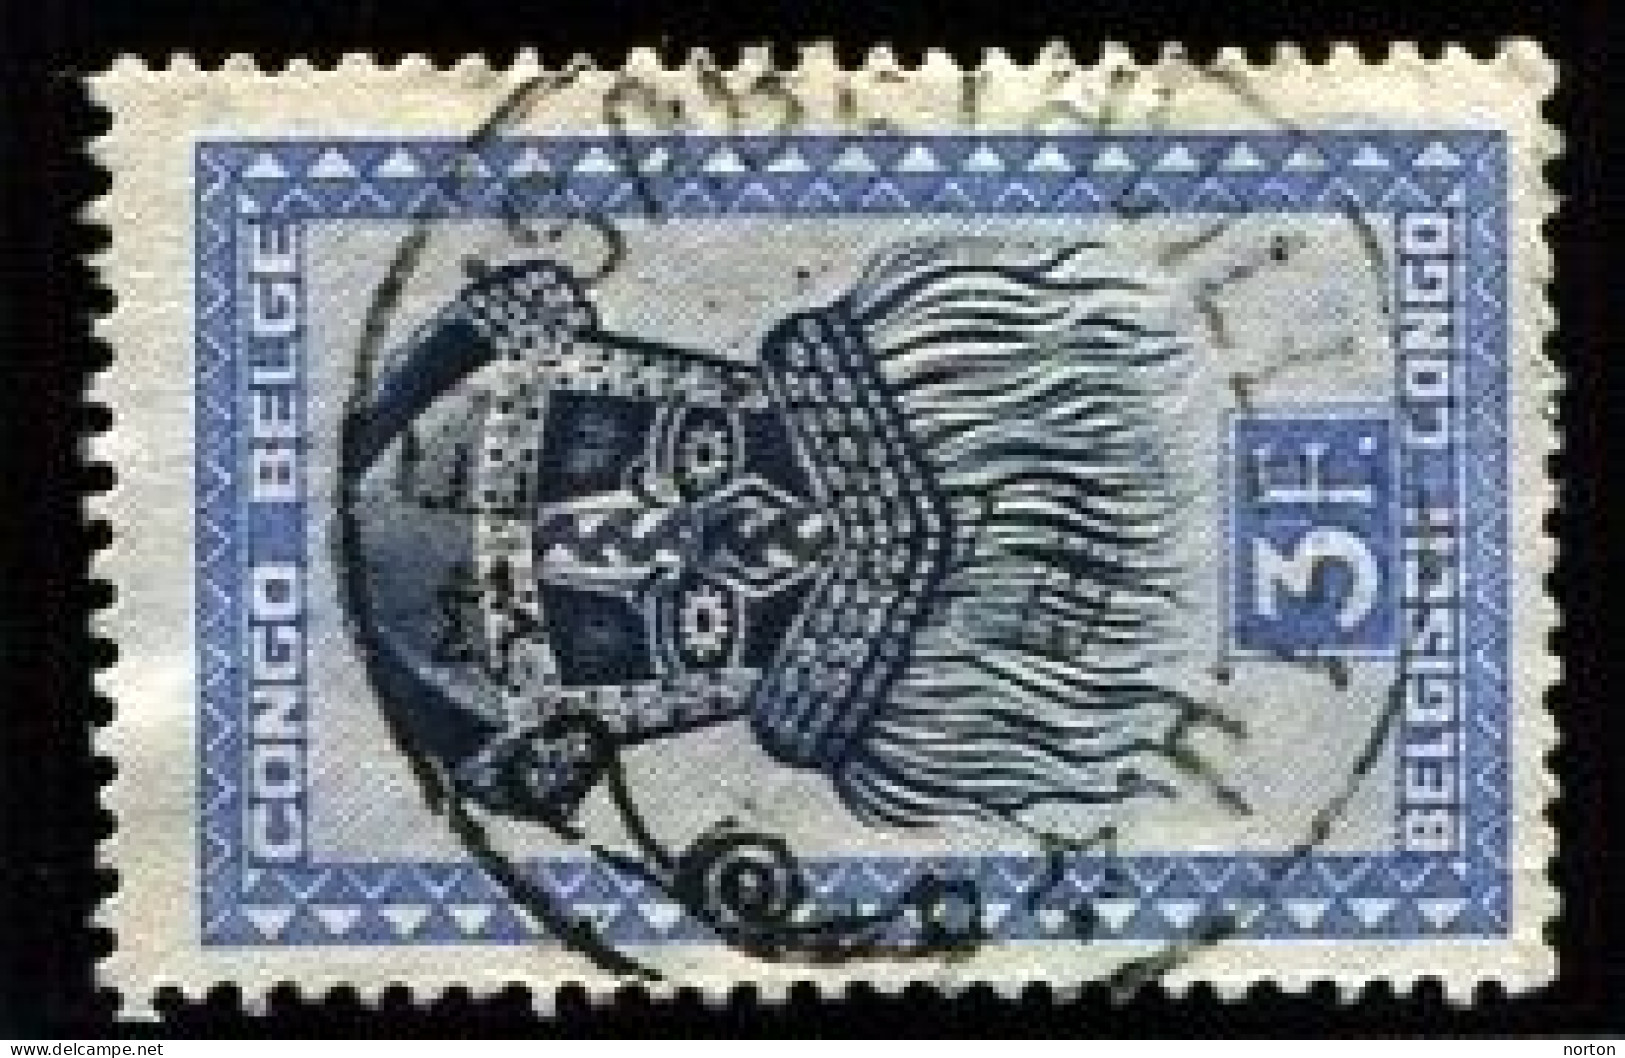 Congo Elisabethville 1 Oblit. Keach 10(.J.) Sur C.O.B. 288A Le 27/12/1947 - Used Stamps